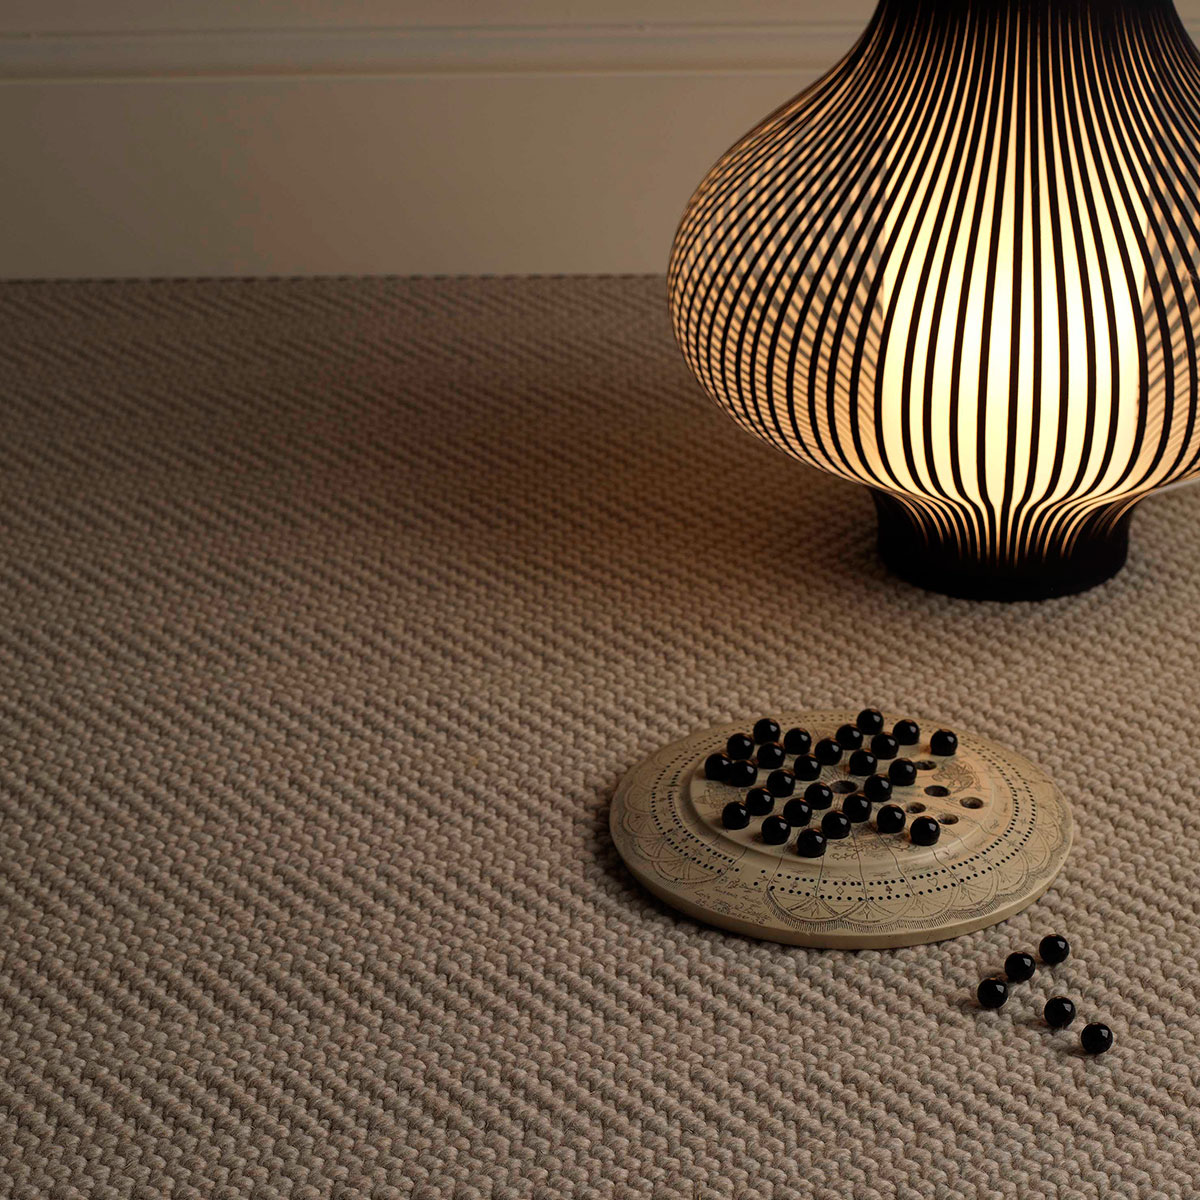 Jacaranda Carpets Natural Weave Herringbone Marl